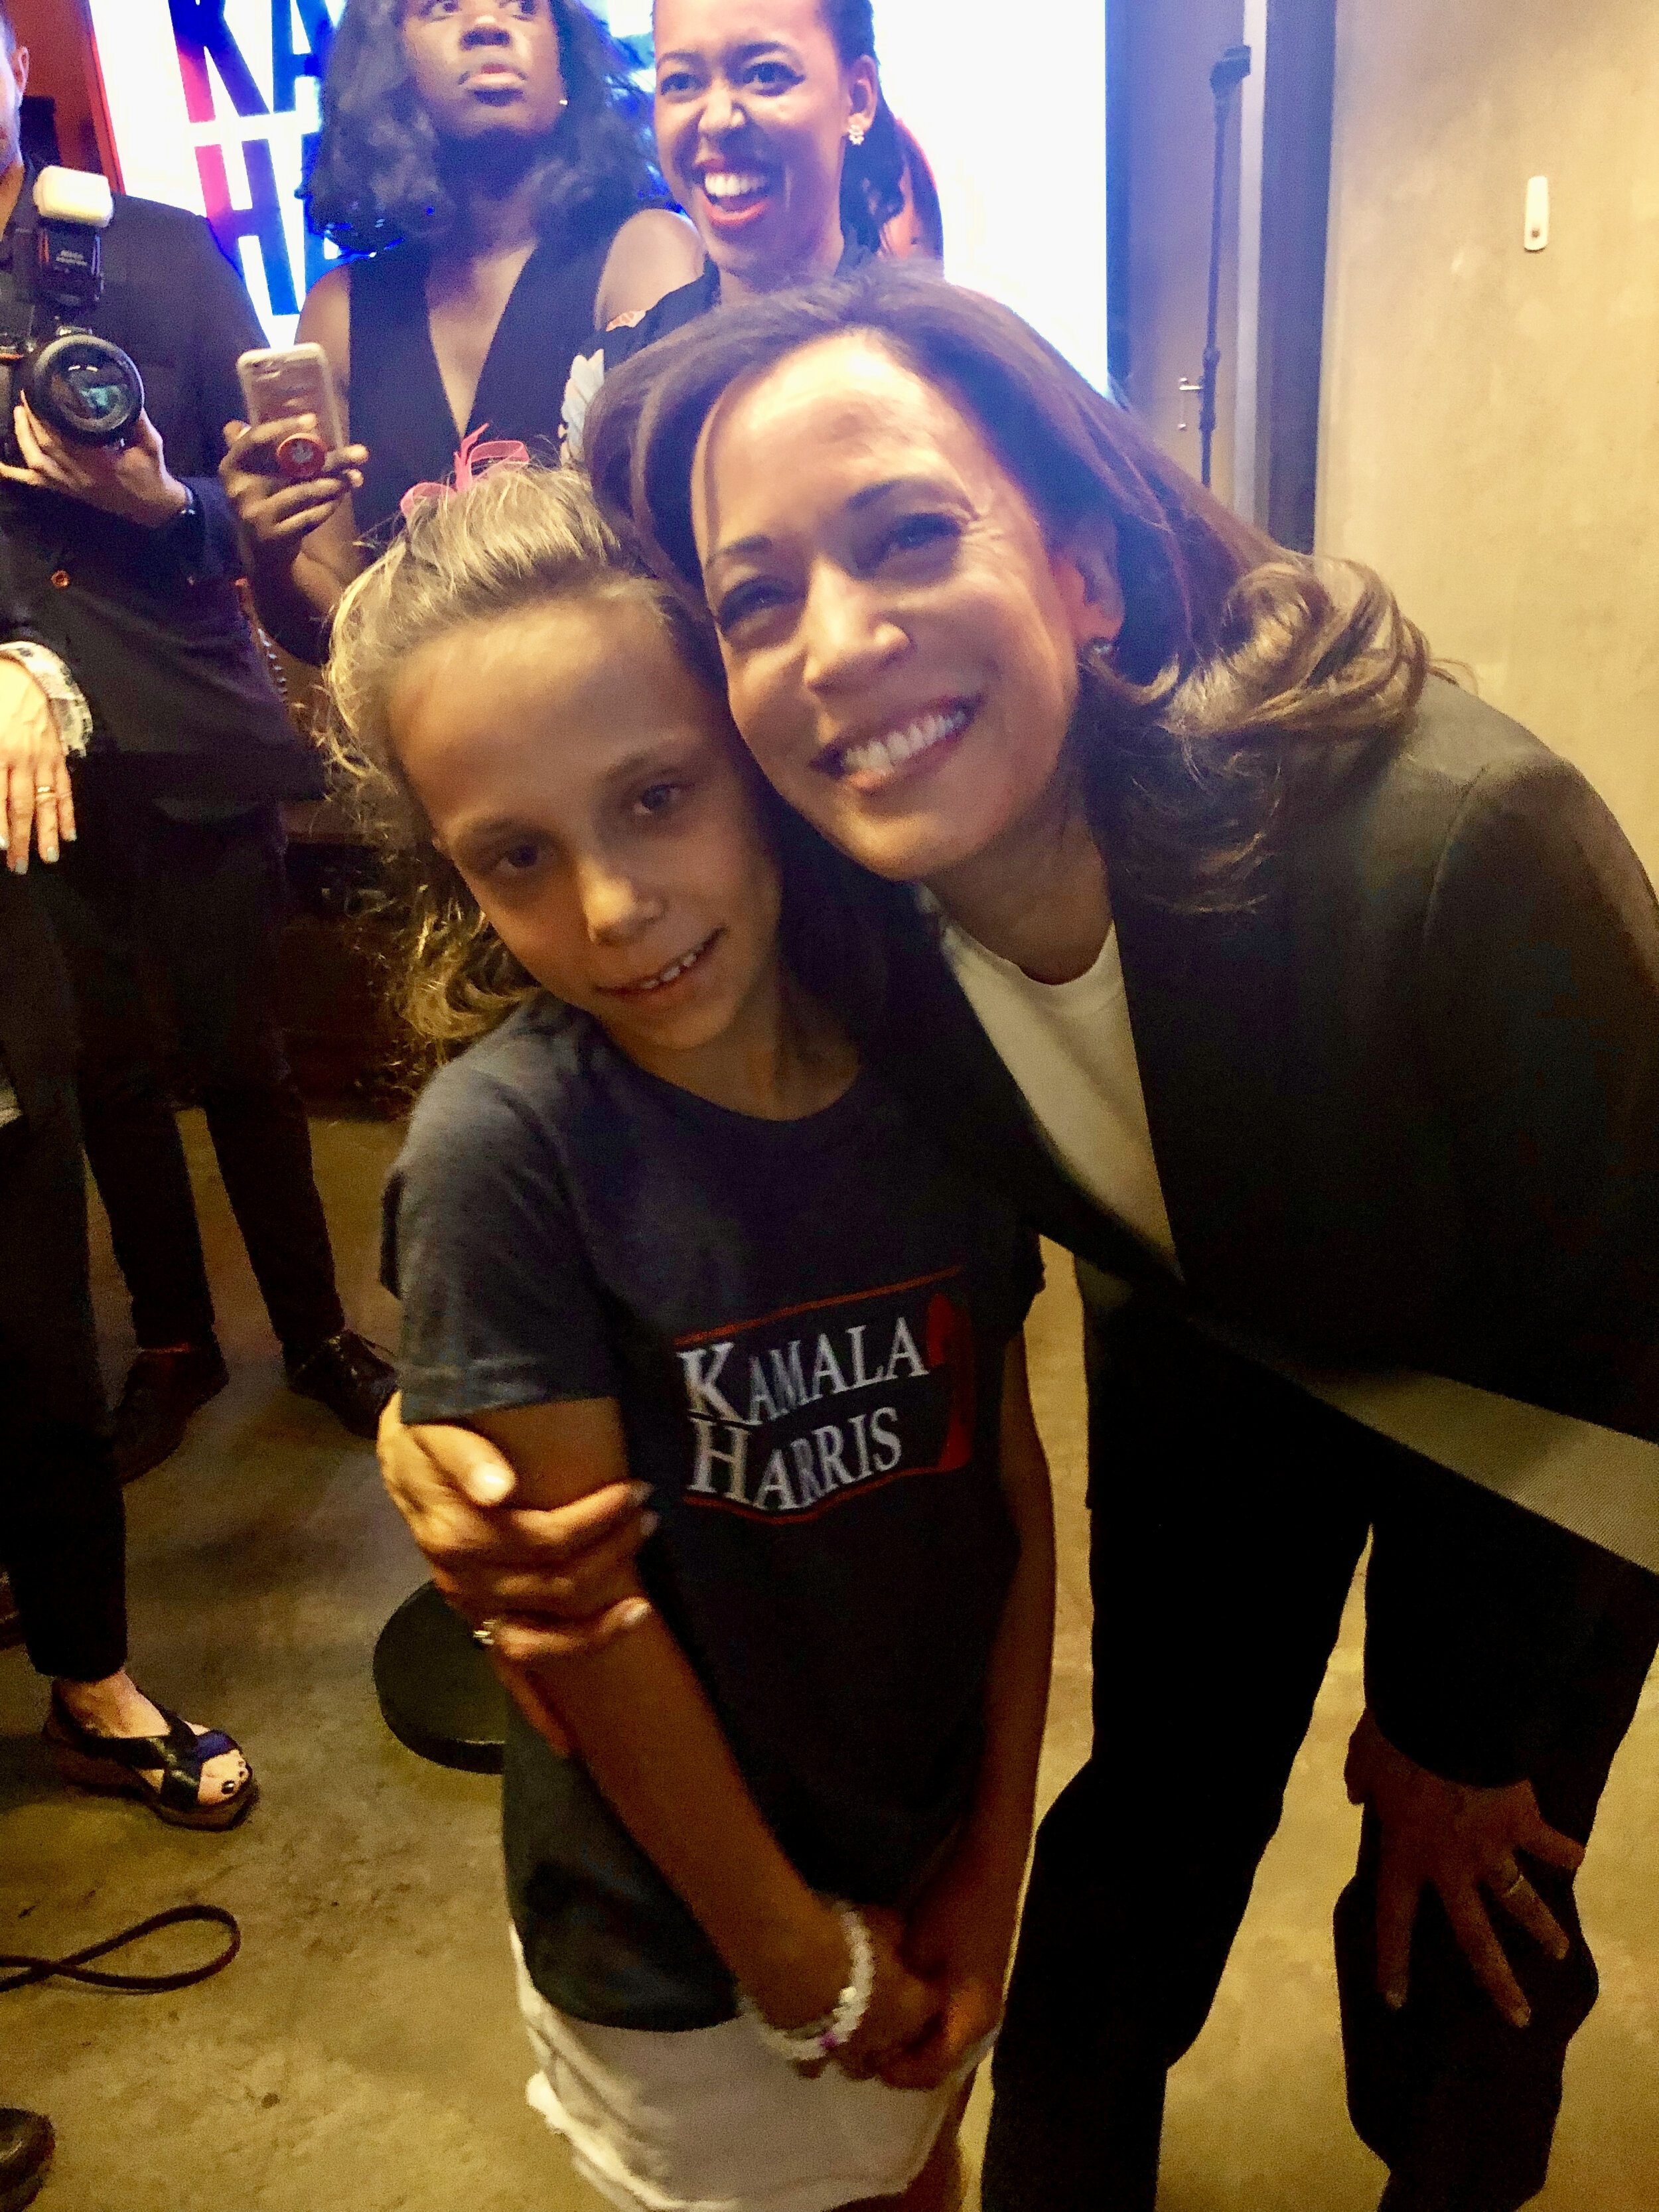  A U.S. Senator hugs a young girl wearing a Kamala Harris t-shirt. 